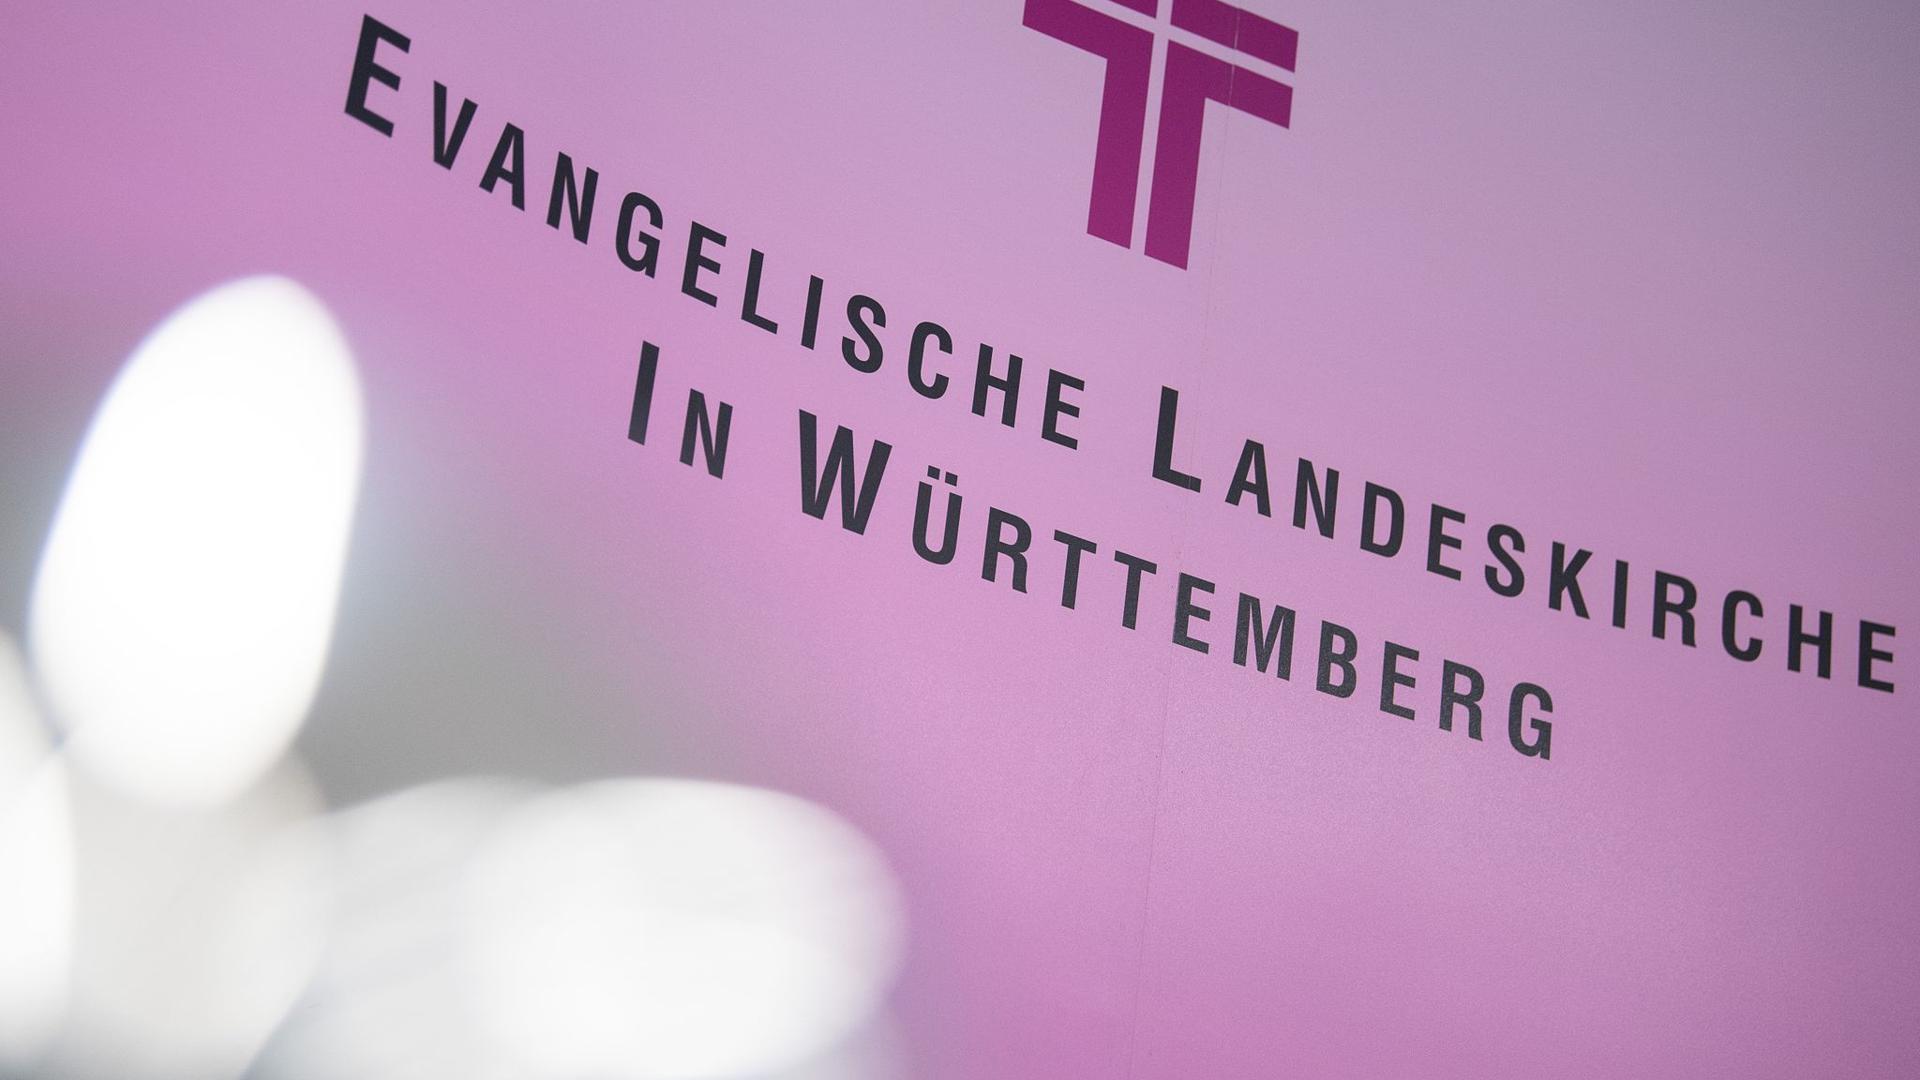 Die Evangelische Landeskirche Württemberg erwartet infolge der Coronakrise einen starken Rückgang beim Kirchensteueraufkommen.